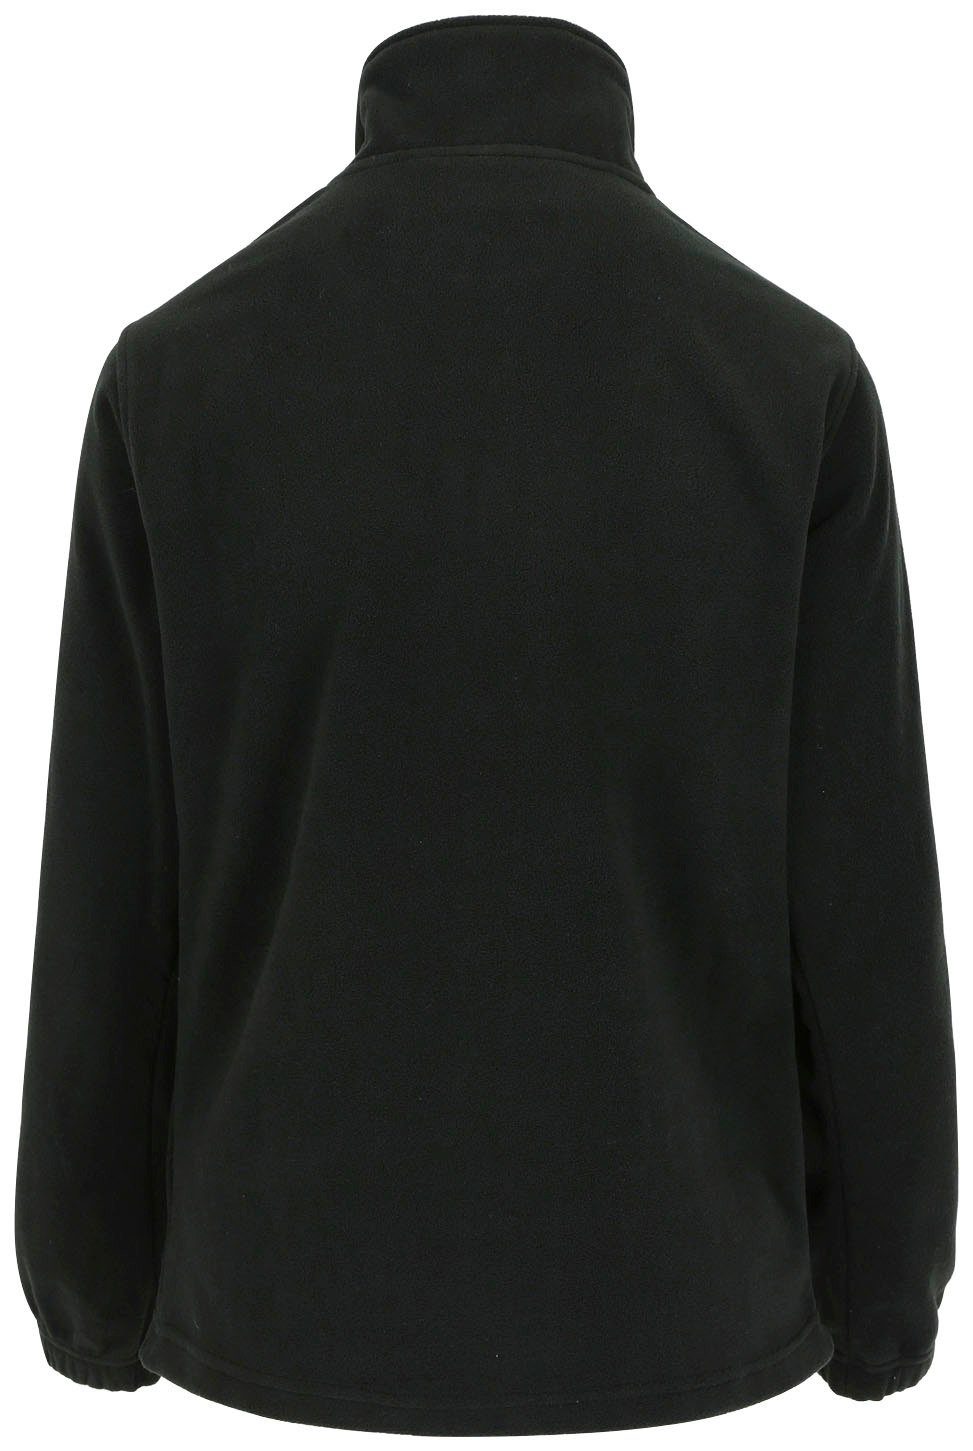 kurzem Herock Bündchen Reißverschluss Fleece-Sweater Aurora-Demen Damenfleecepullover mit und schwarz Stehkragenpullover elastichem